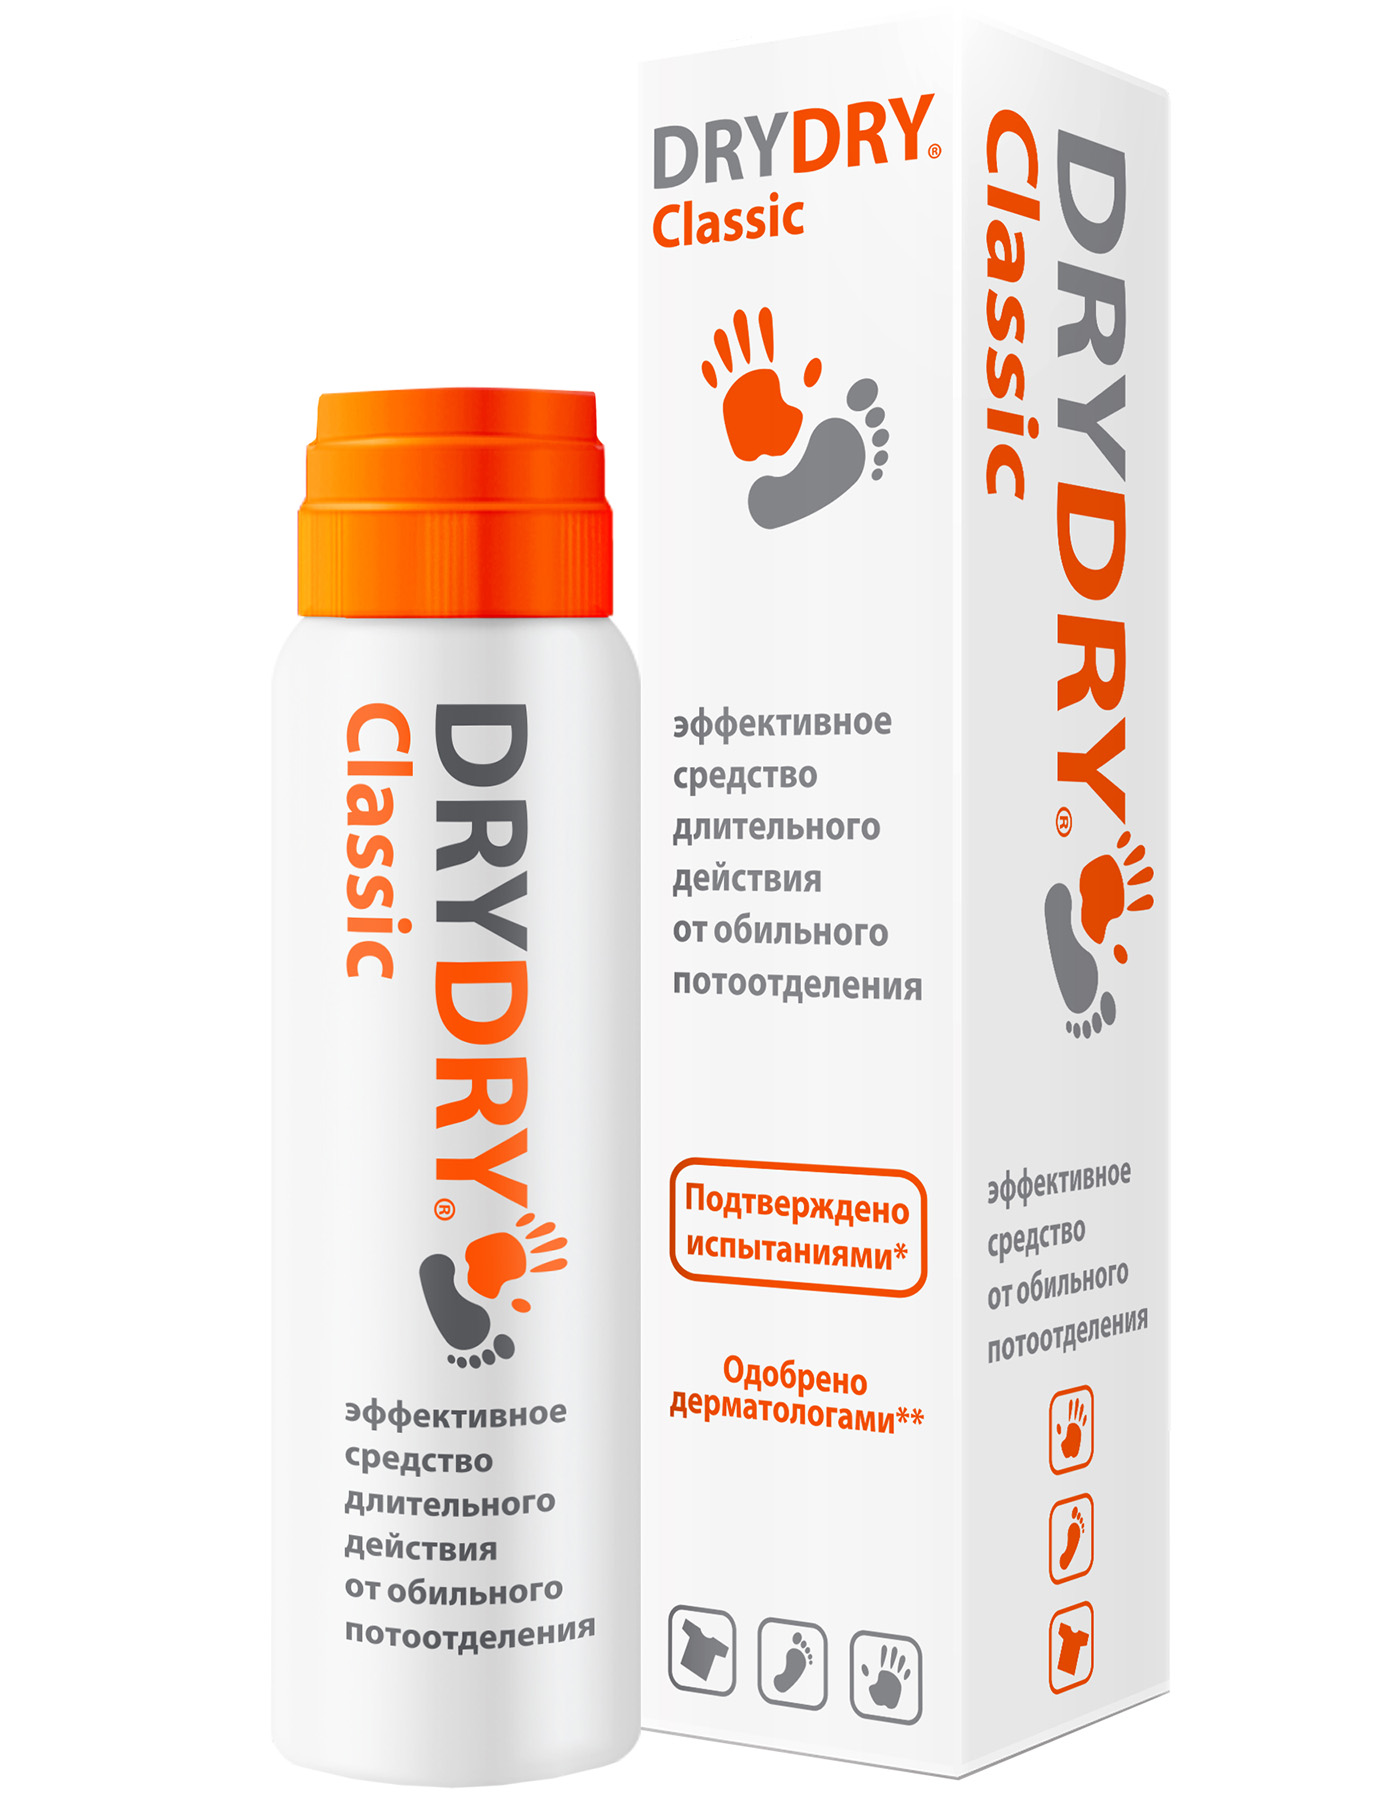 Dry Dry Средство от обильного потоотделения длительного действия 35 мл (Dry Dry, Classic)